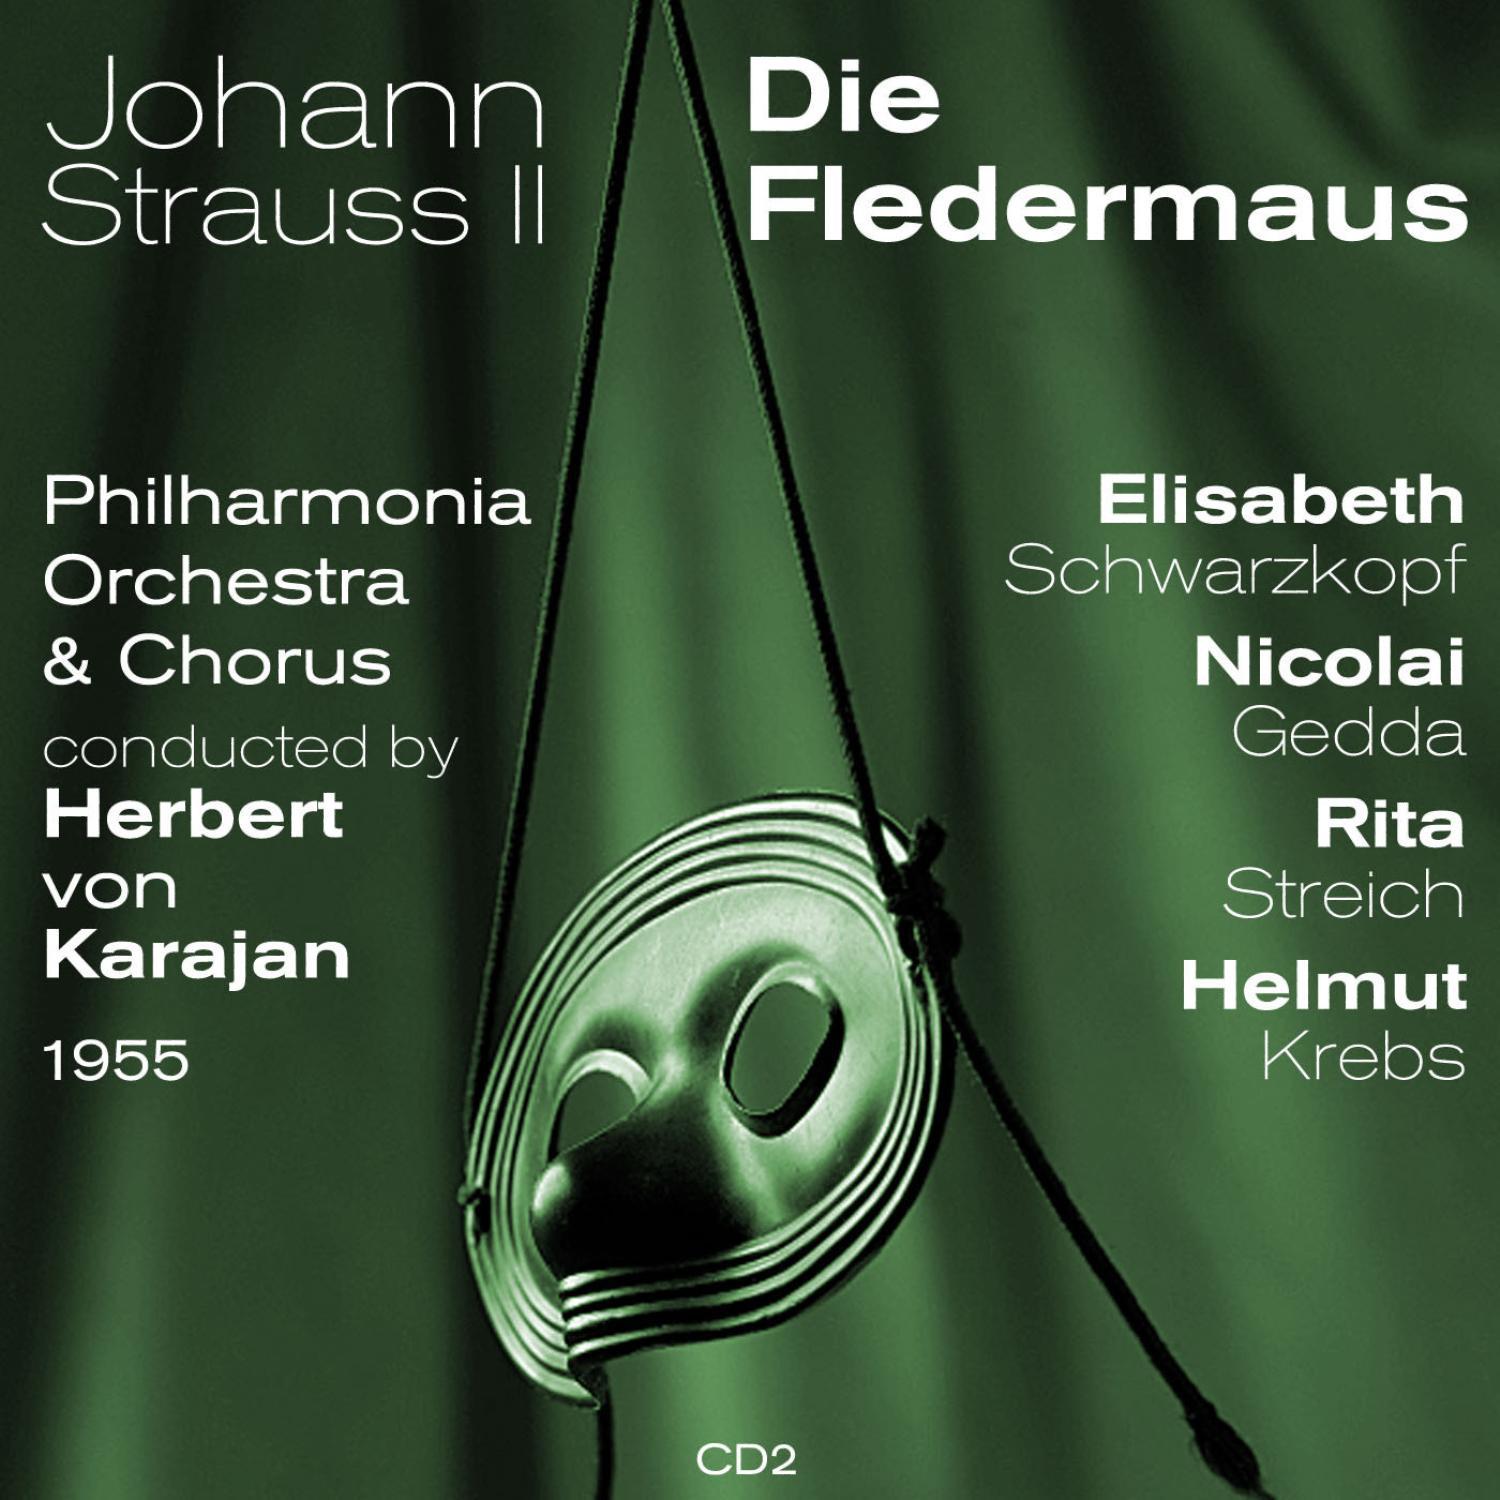 Johann Strauss II: Die Fledermaus, Act II: Ausgezeichnet, bravo!